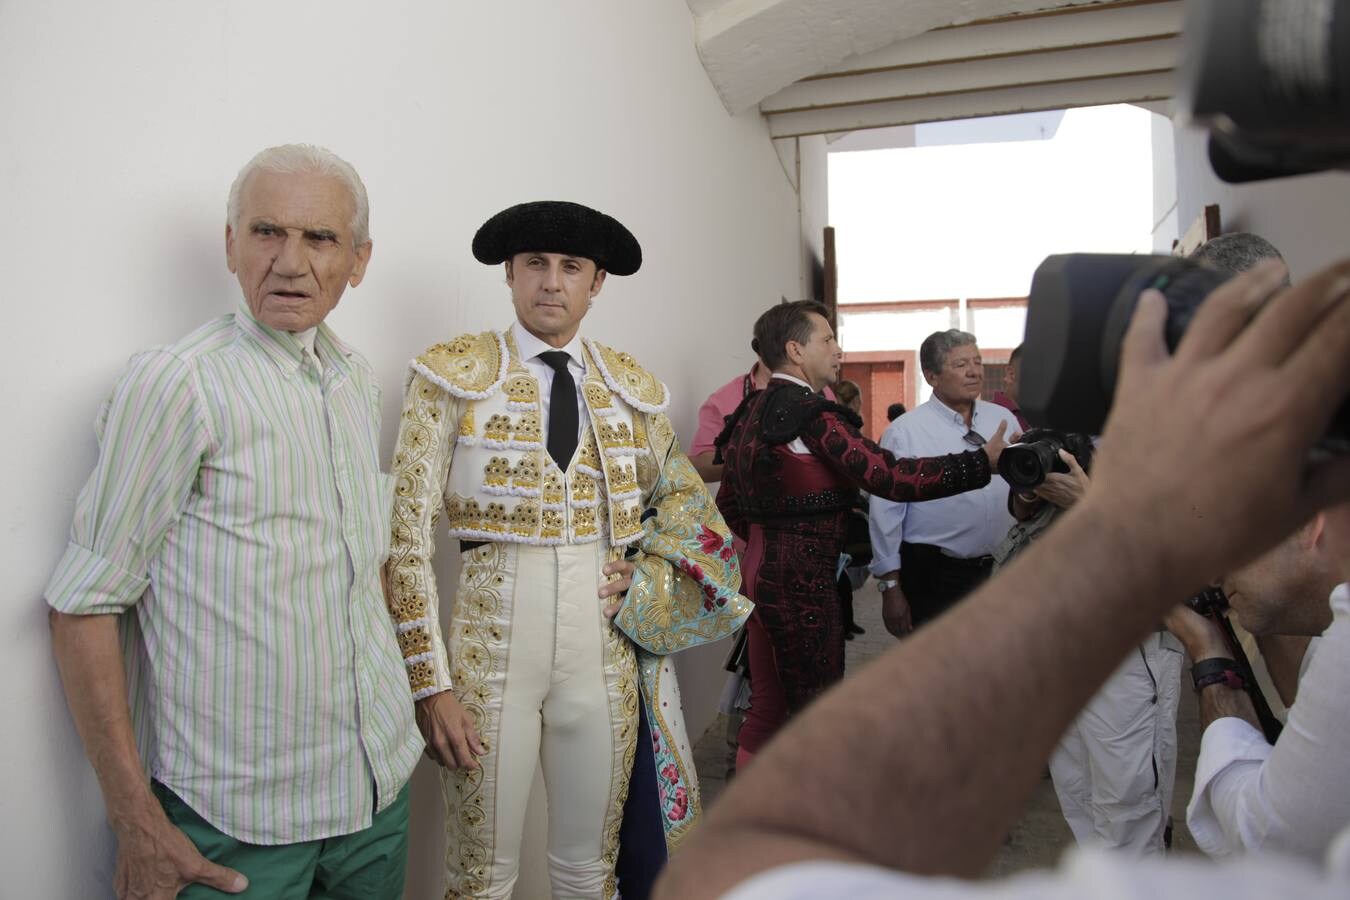 Curro Díaz abre la puerta grande con una faena de su corte, con excelentes pasajes de toreo al natural en la despedida sin premio para Ruiz Manuel